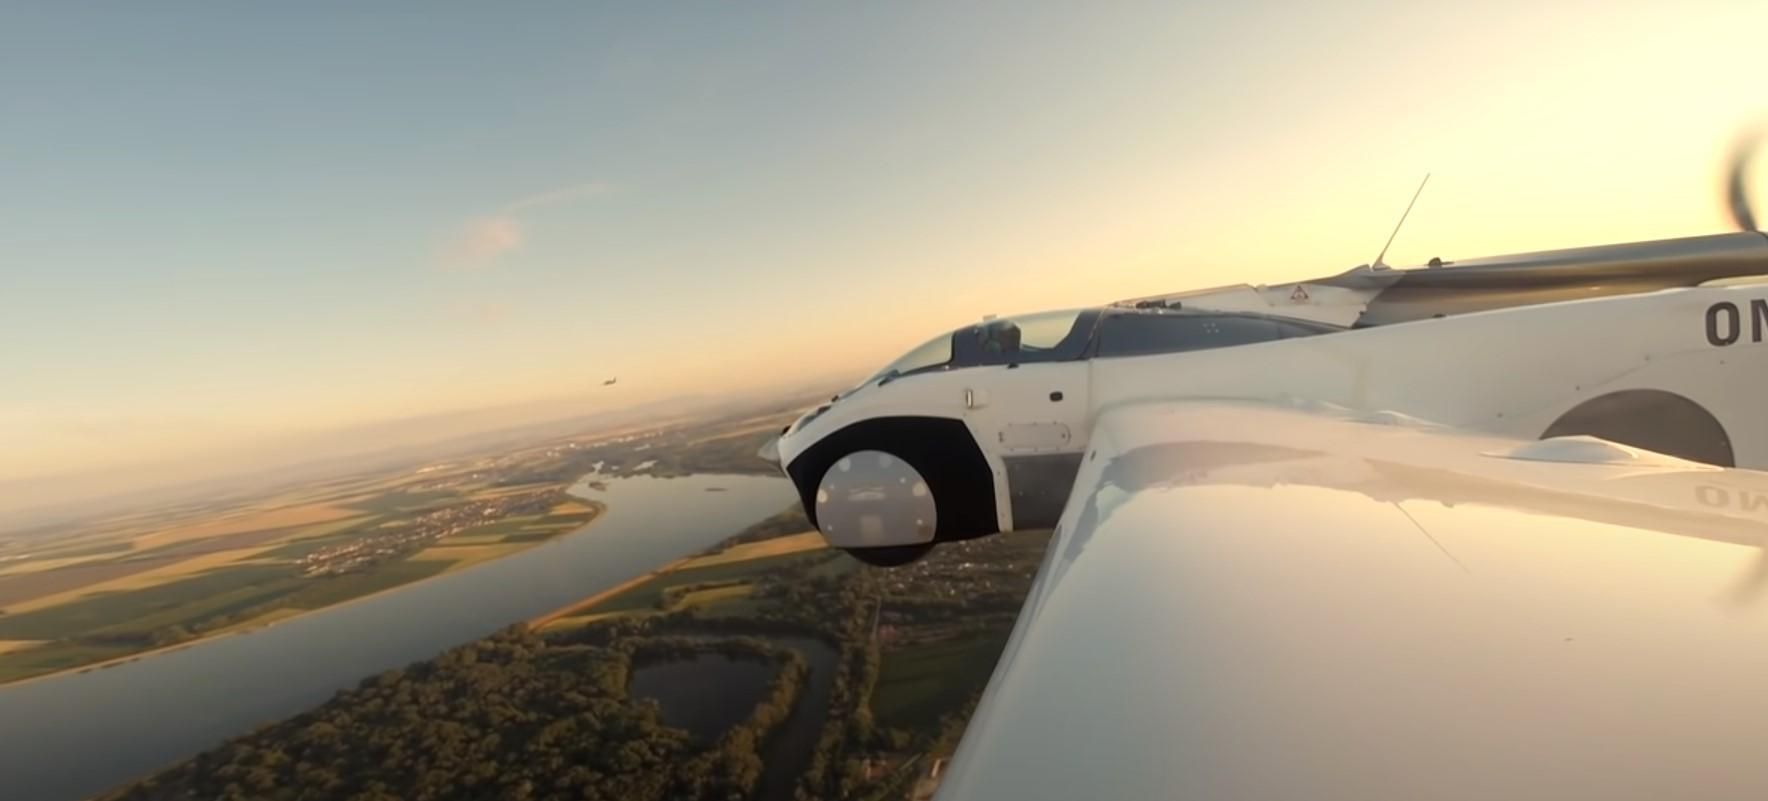 Летающее авто AirCar выполнило первый междугородный рейс: видео